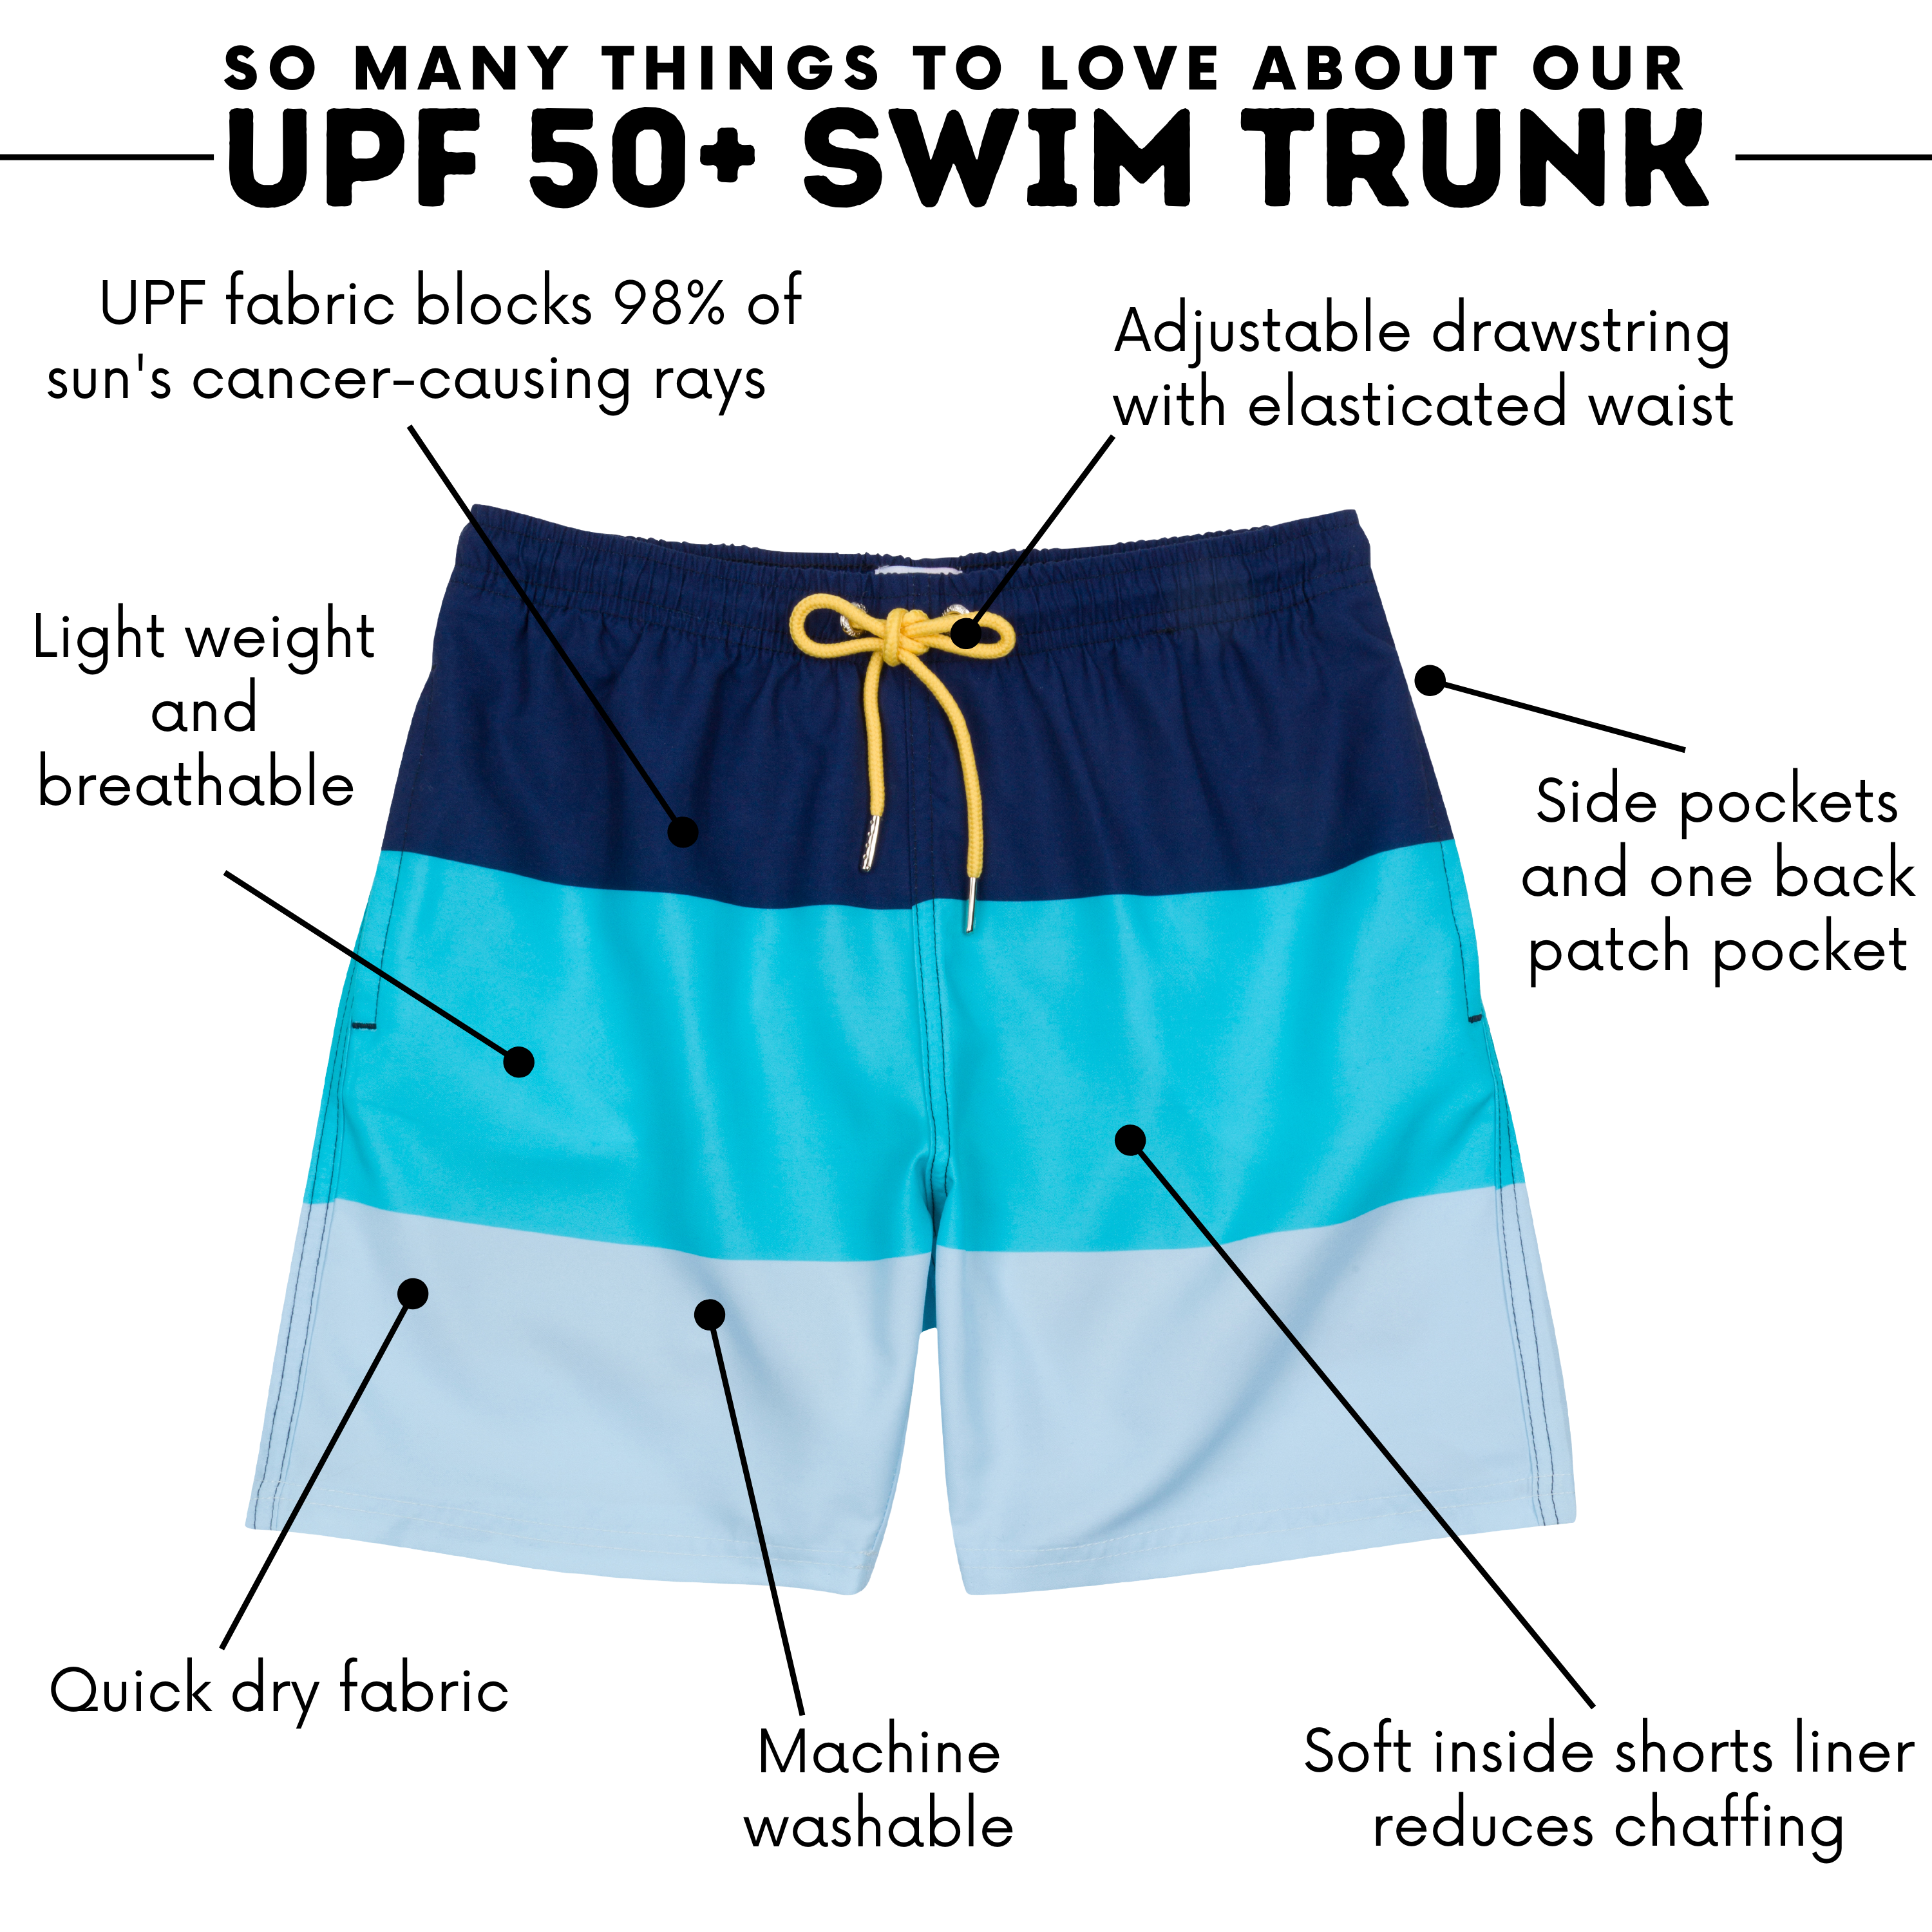 Boys Separate Quick-Dry Swim Liner for Under Boys Trunks | Black